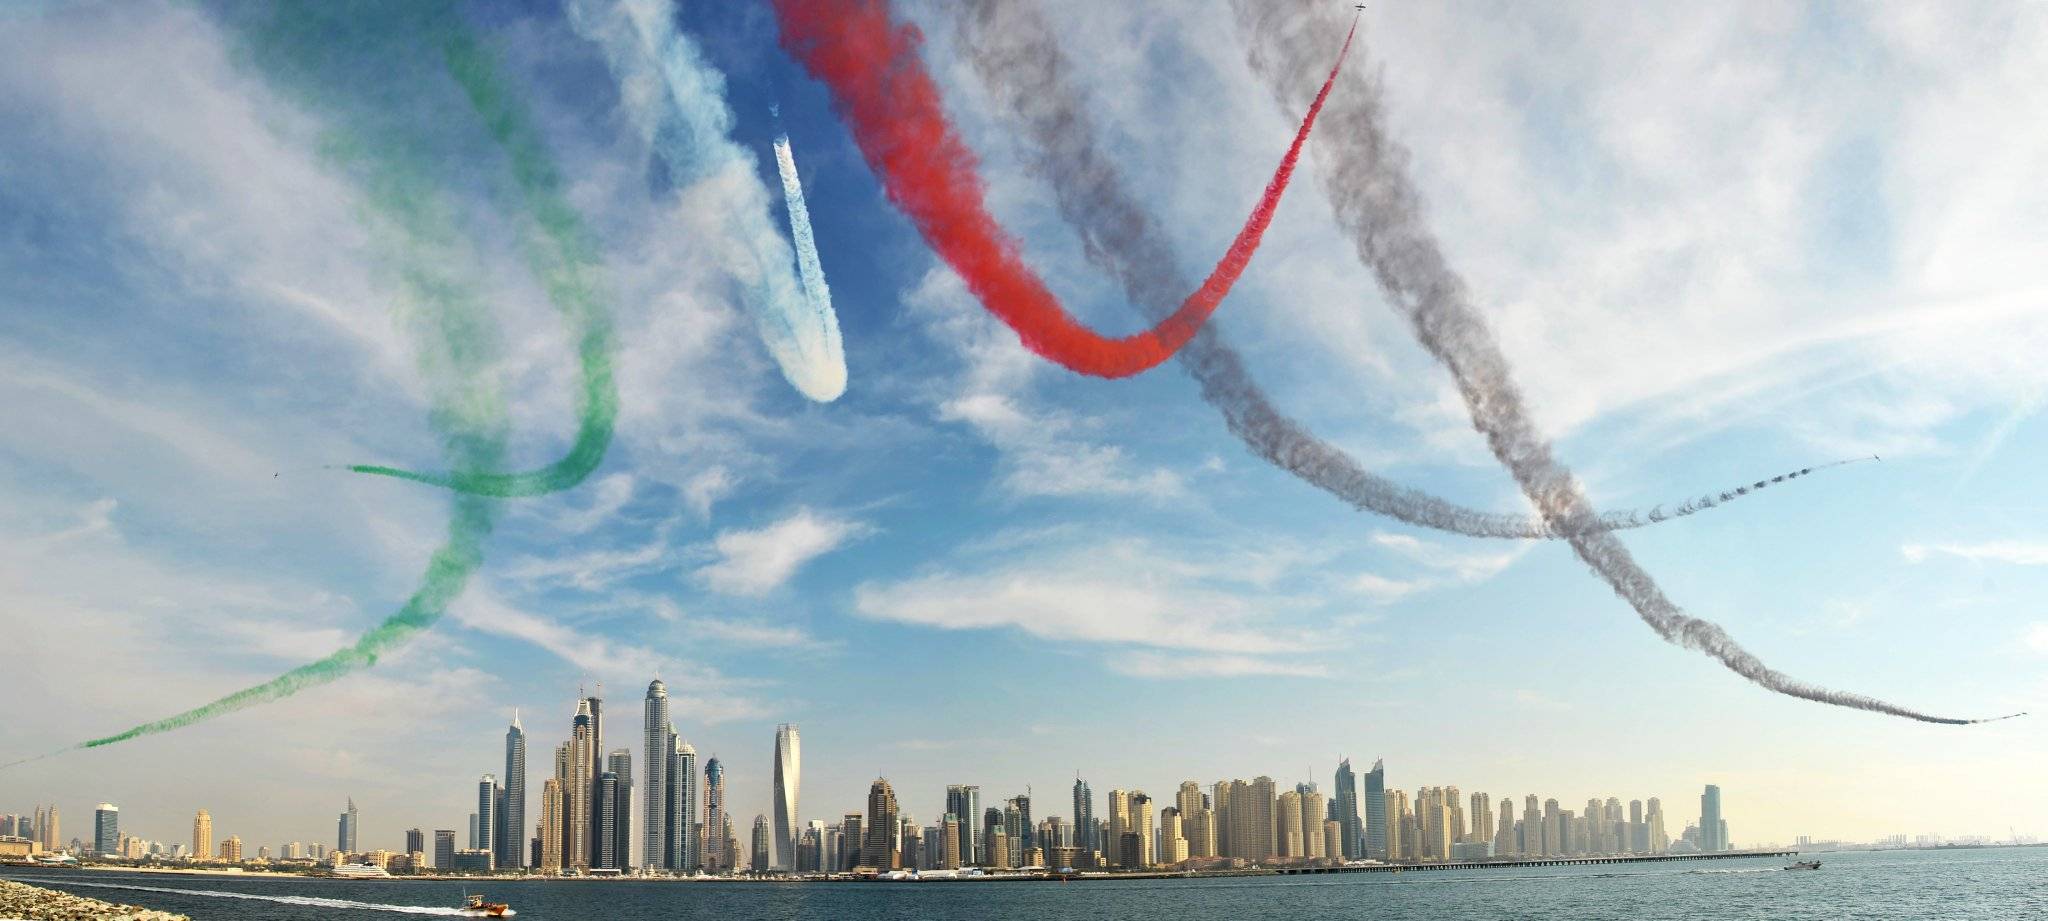 فريق-«فرسان-الإمارات»-يقدم-عروضاً-جوّية-مشوّقة-في-سماء-دبي-مساء-الغد